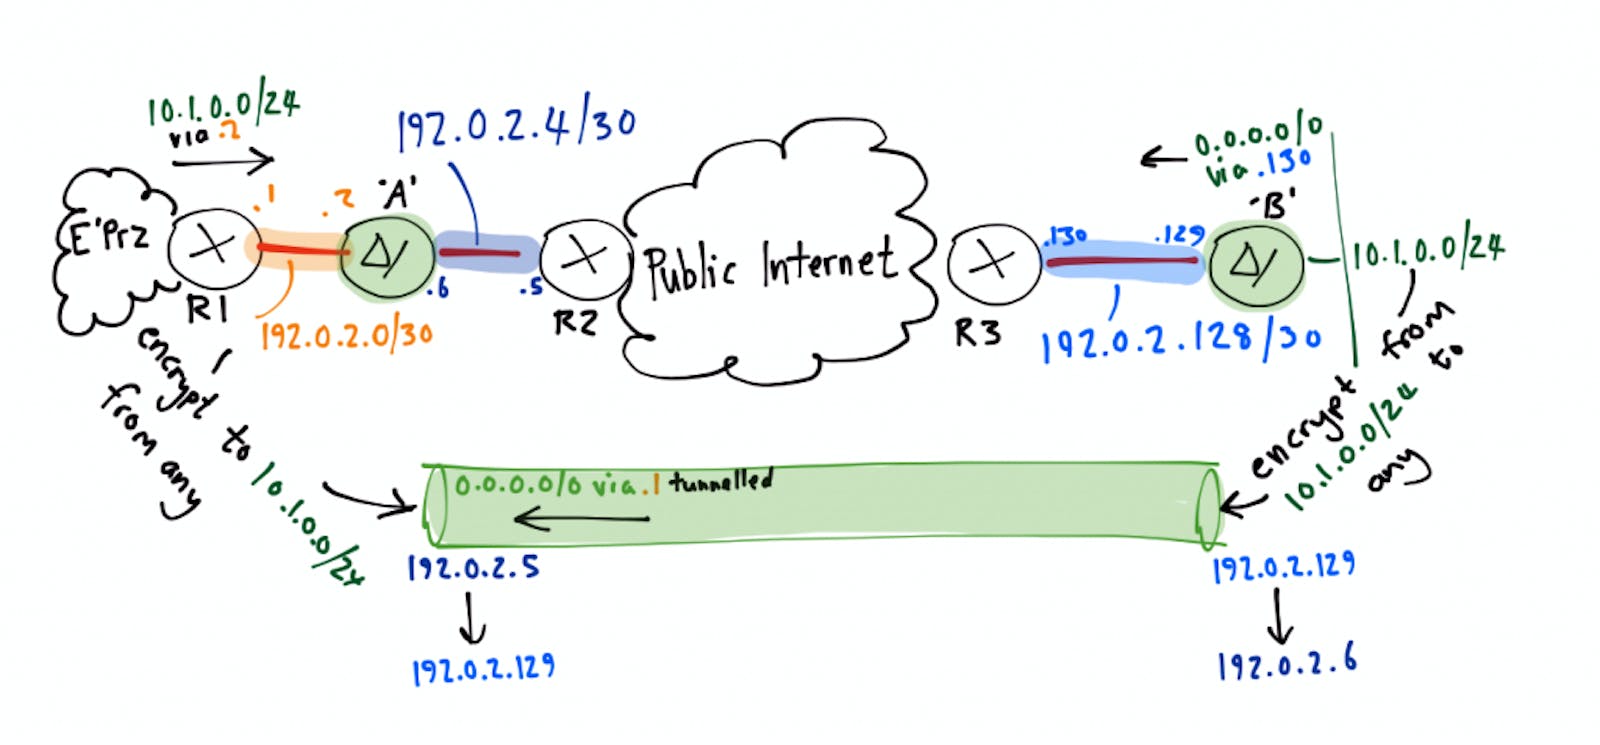 IPsec VPN: Understanding IKE Phase 1 Main Mode